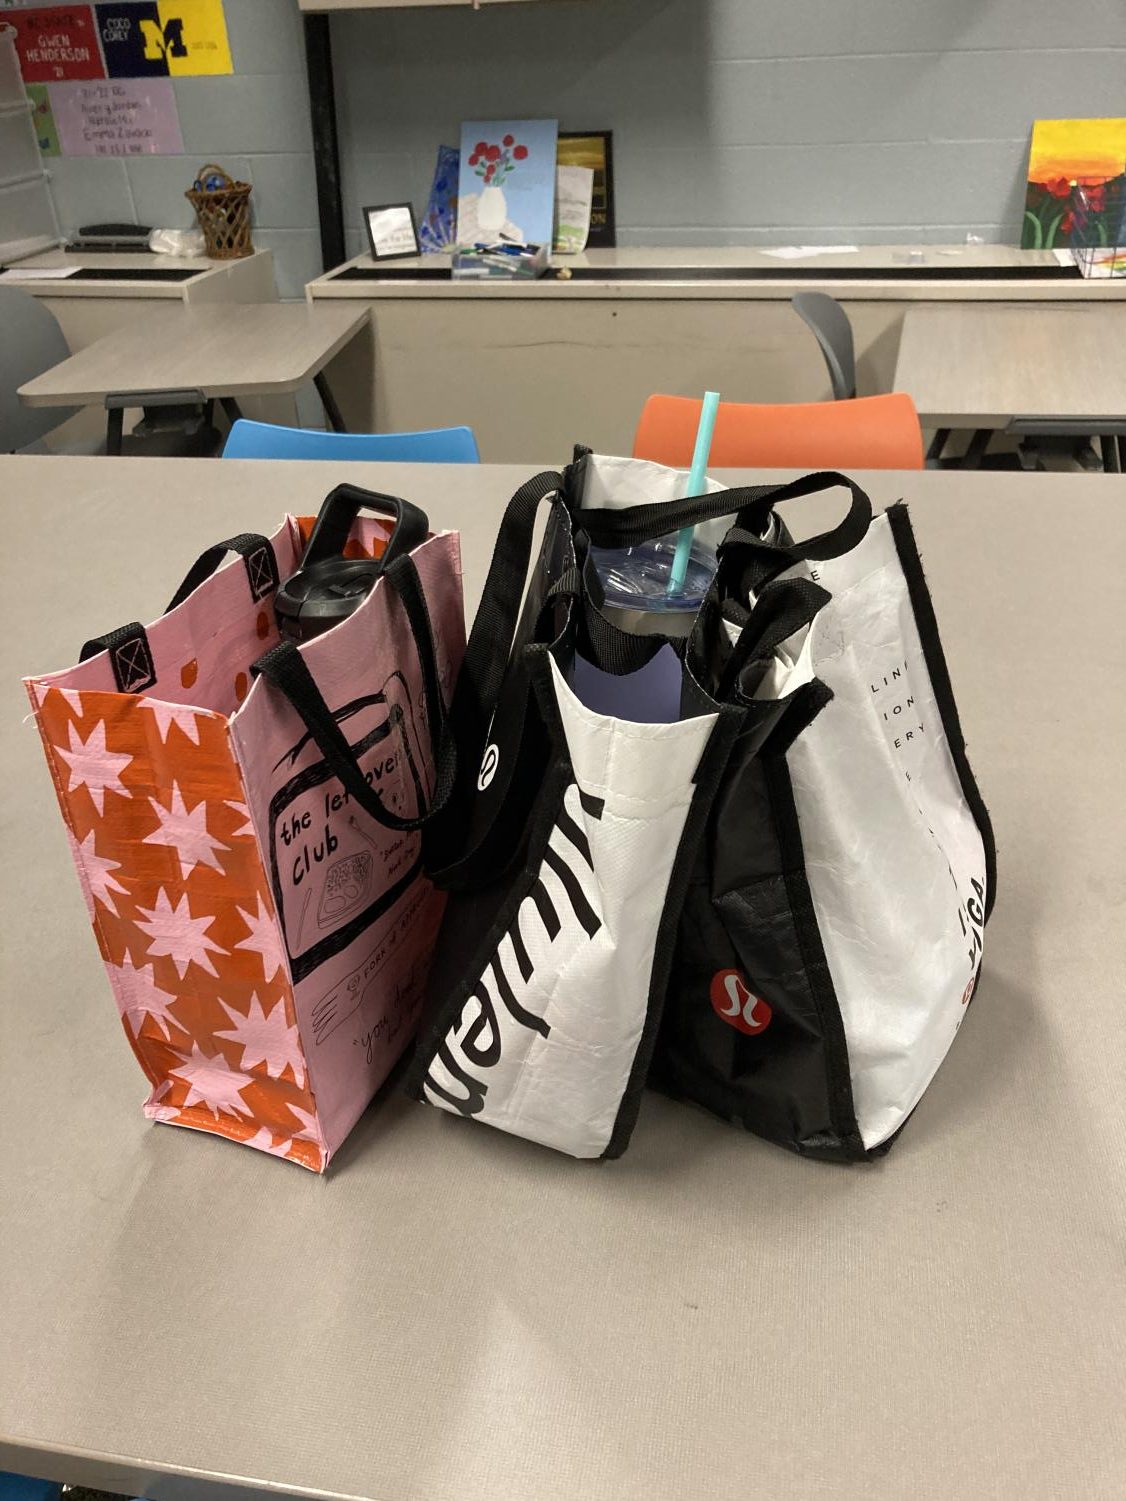 Lululemon Small Reusable Tote Bag for Gym and Shopping